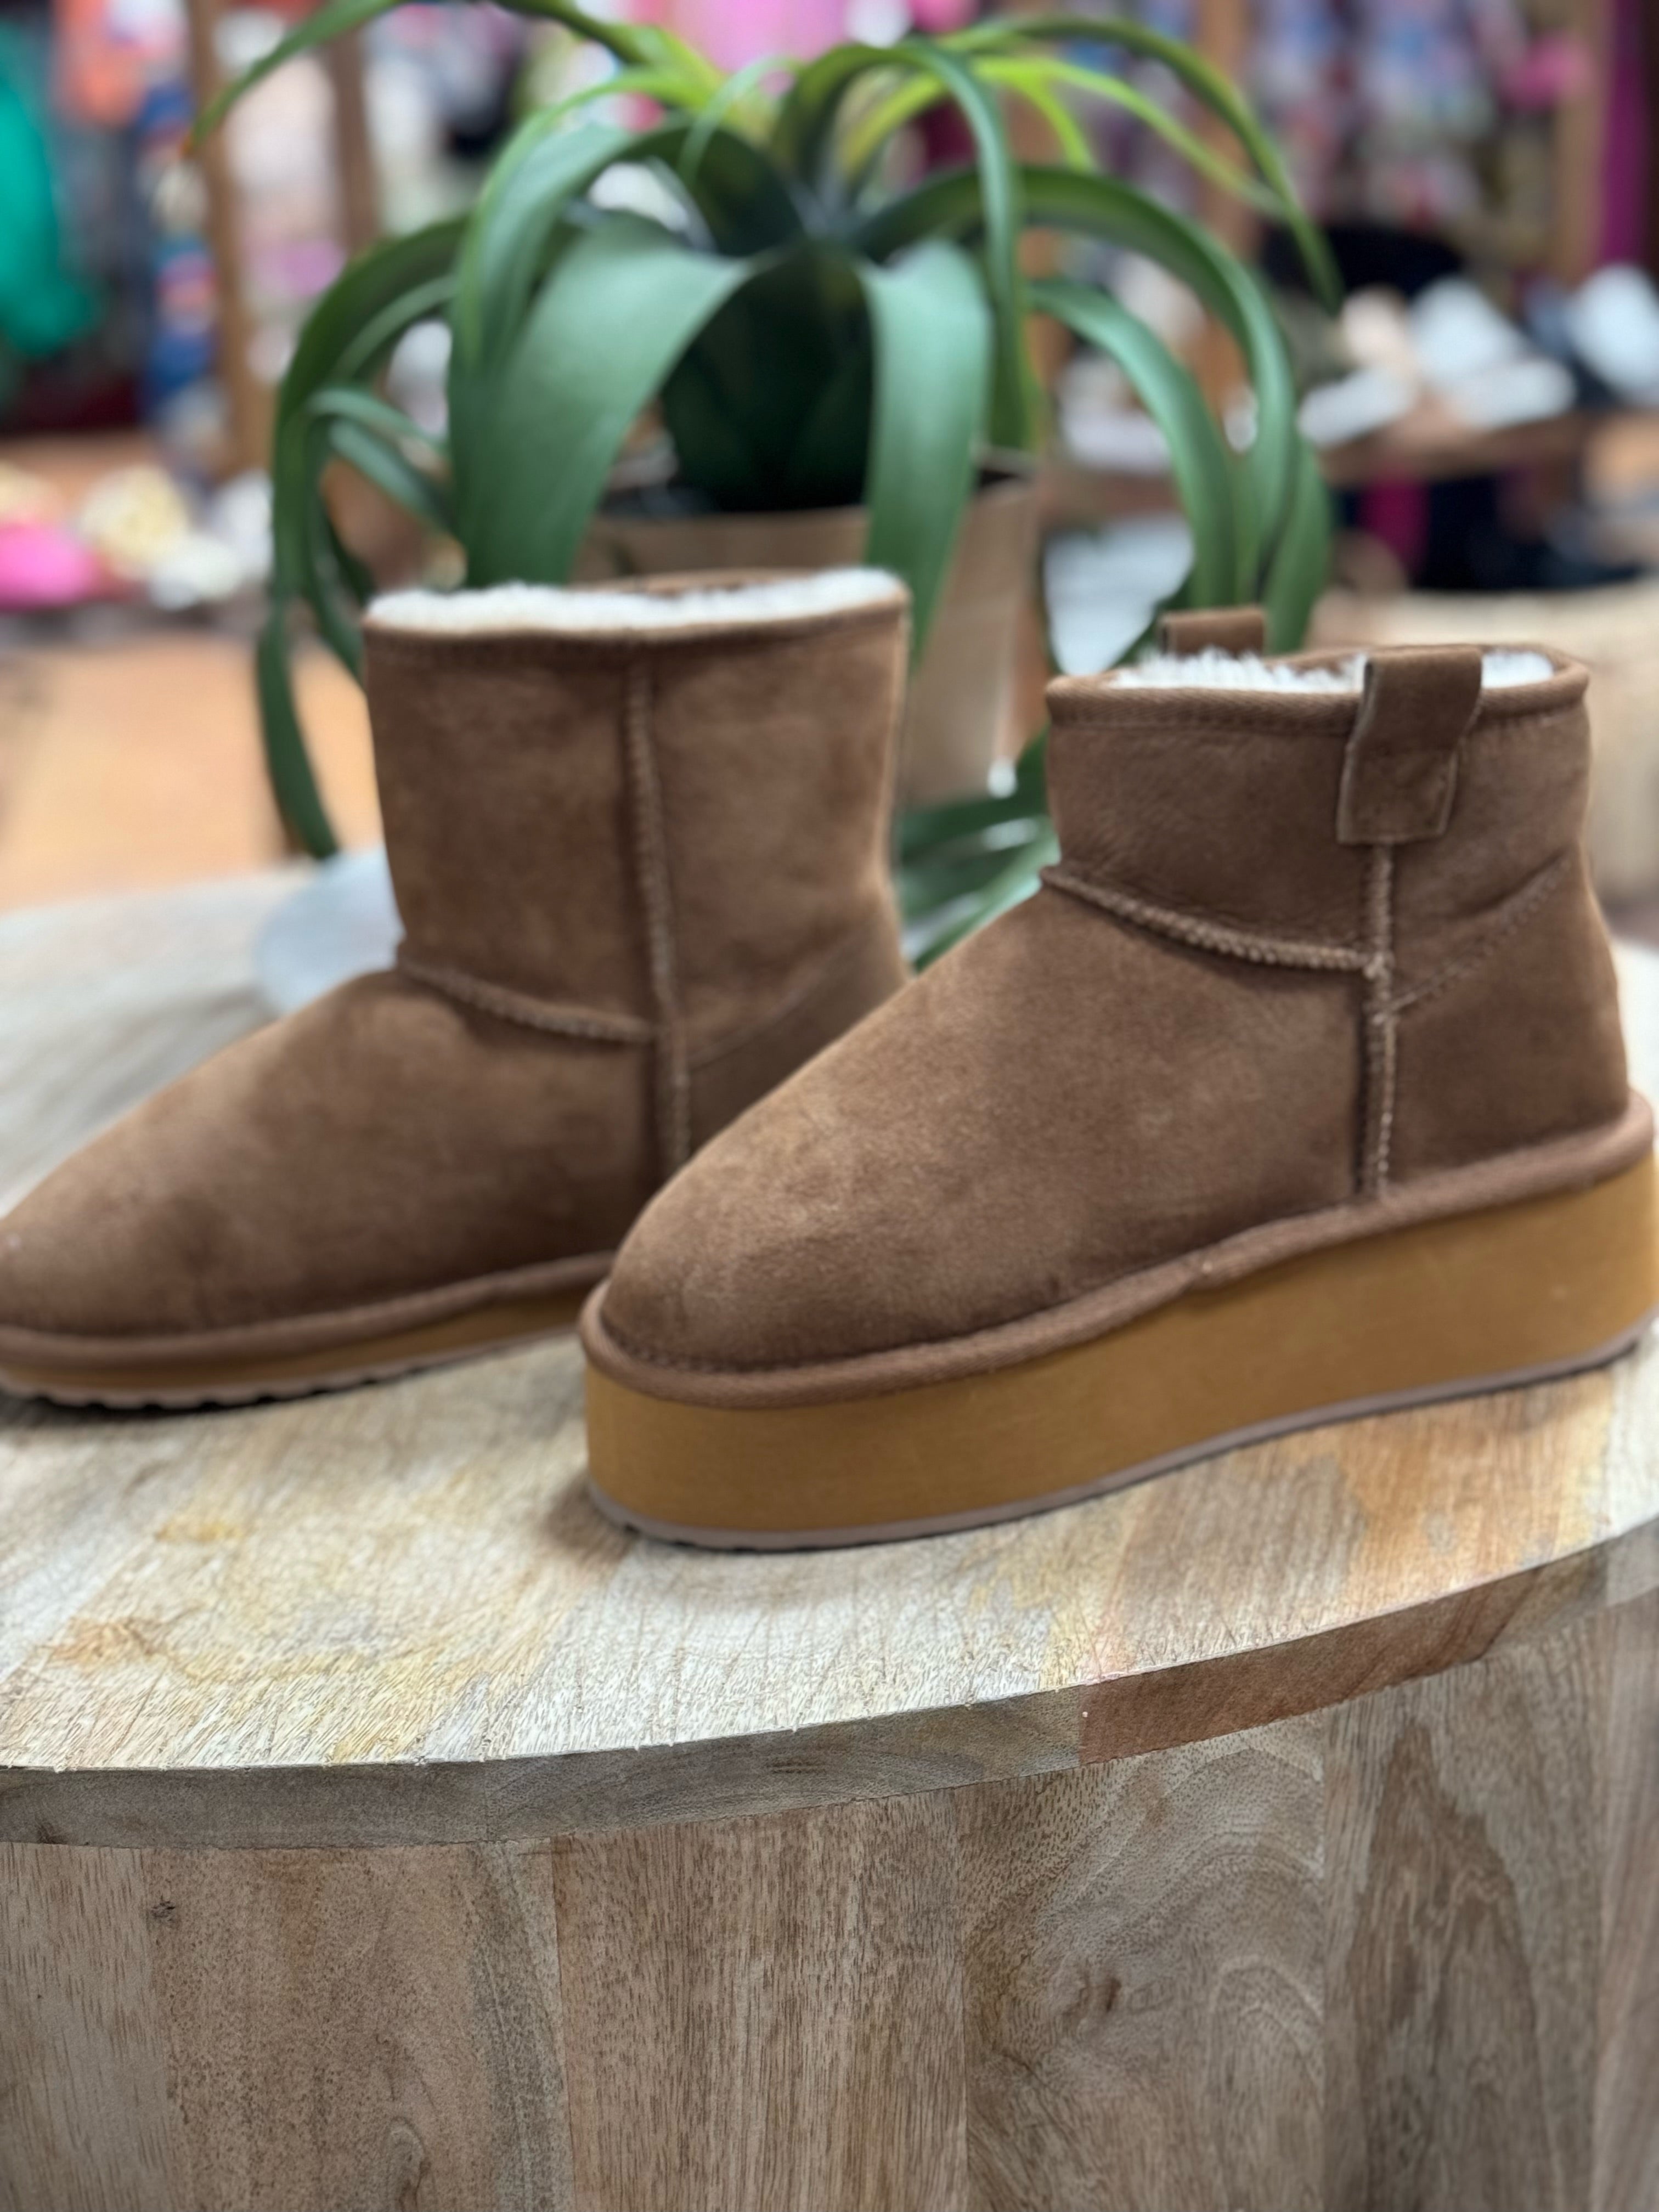 Australian Boots (2 Styles)